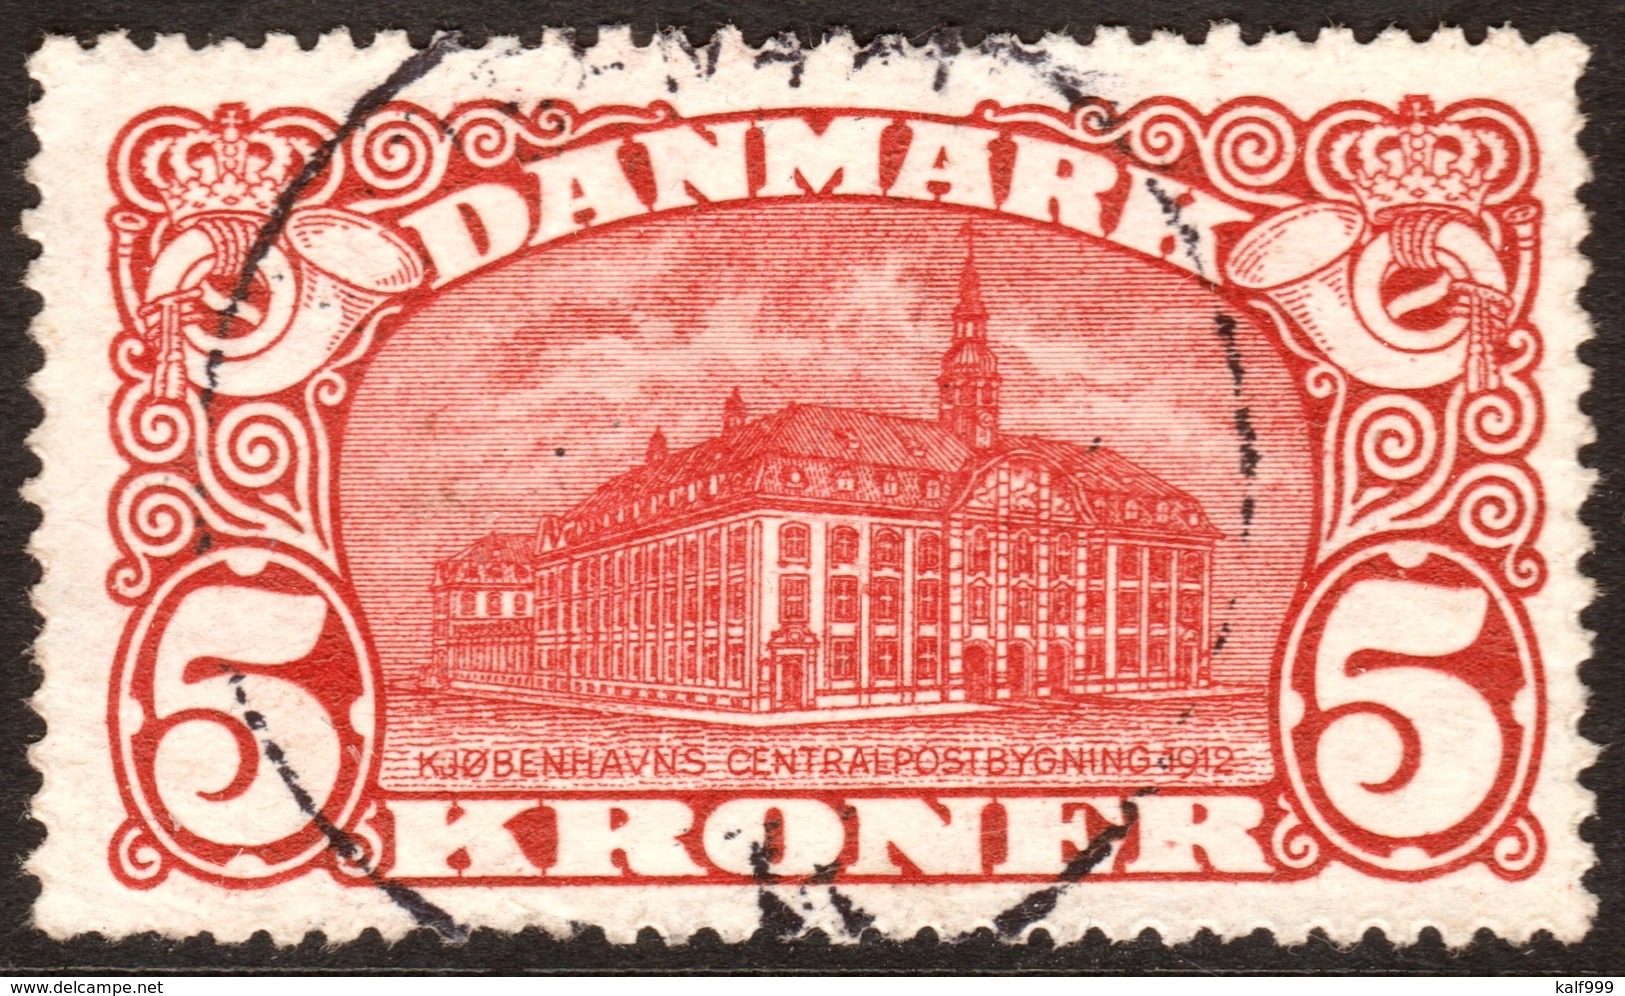 ~~~  Denmark 1915 - Post Office Building Key Value Perf 14:14½  - Mi. 81 (o) - Cat. 120.00 Euro  ~~~ - Gebruikt